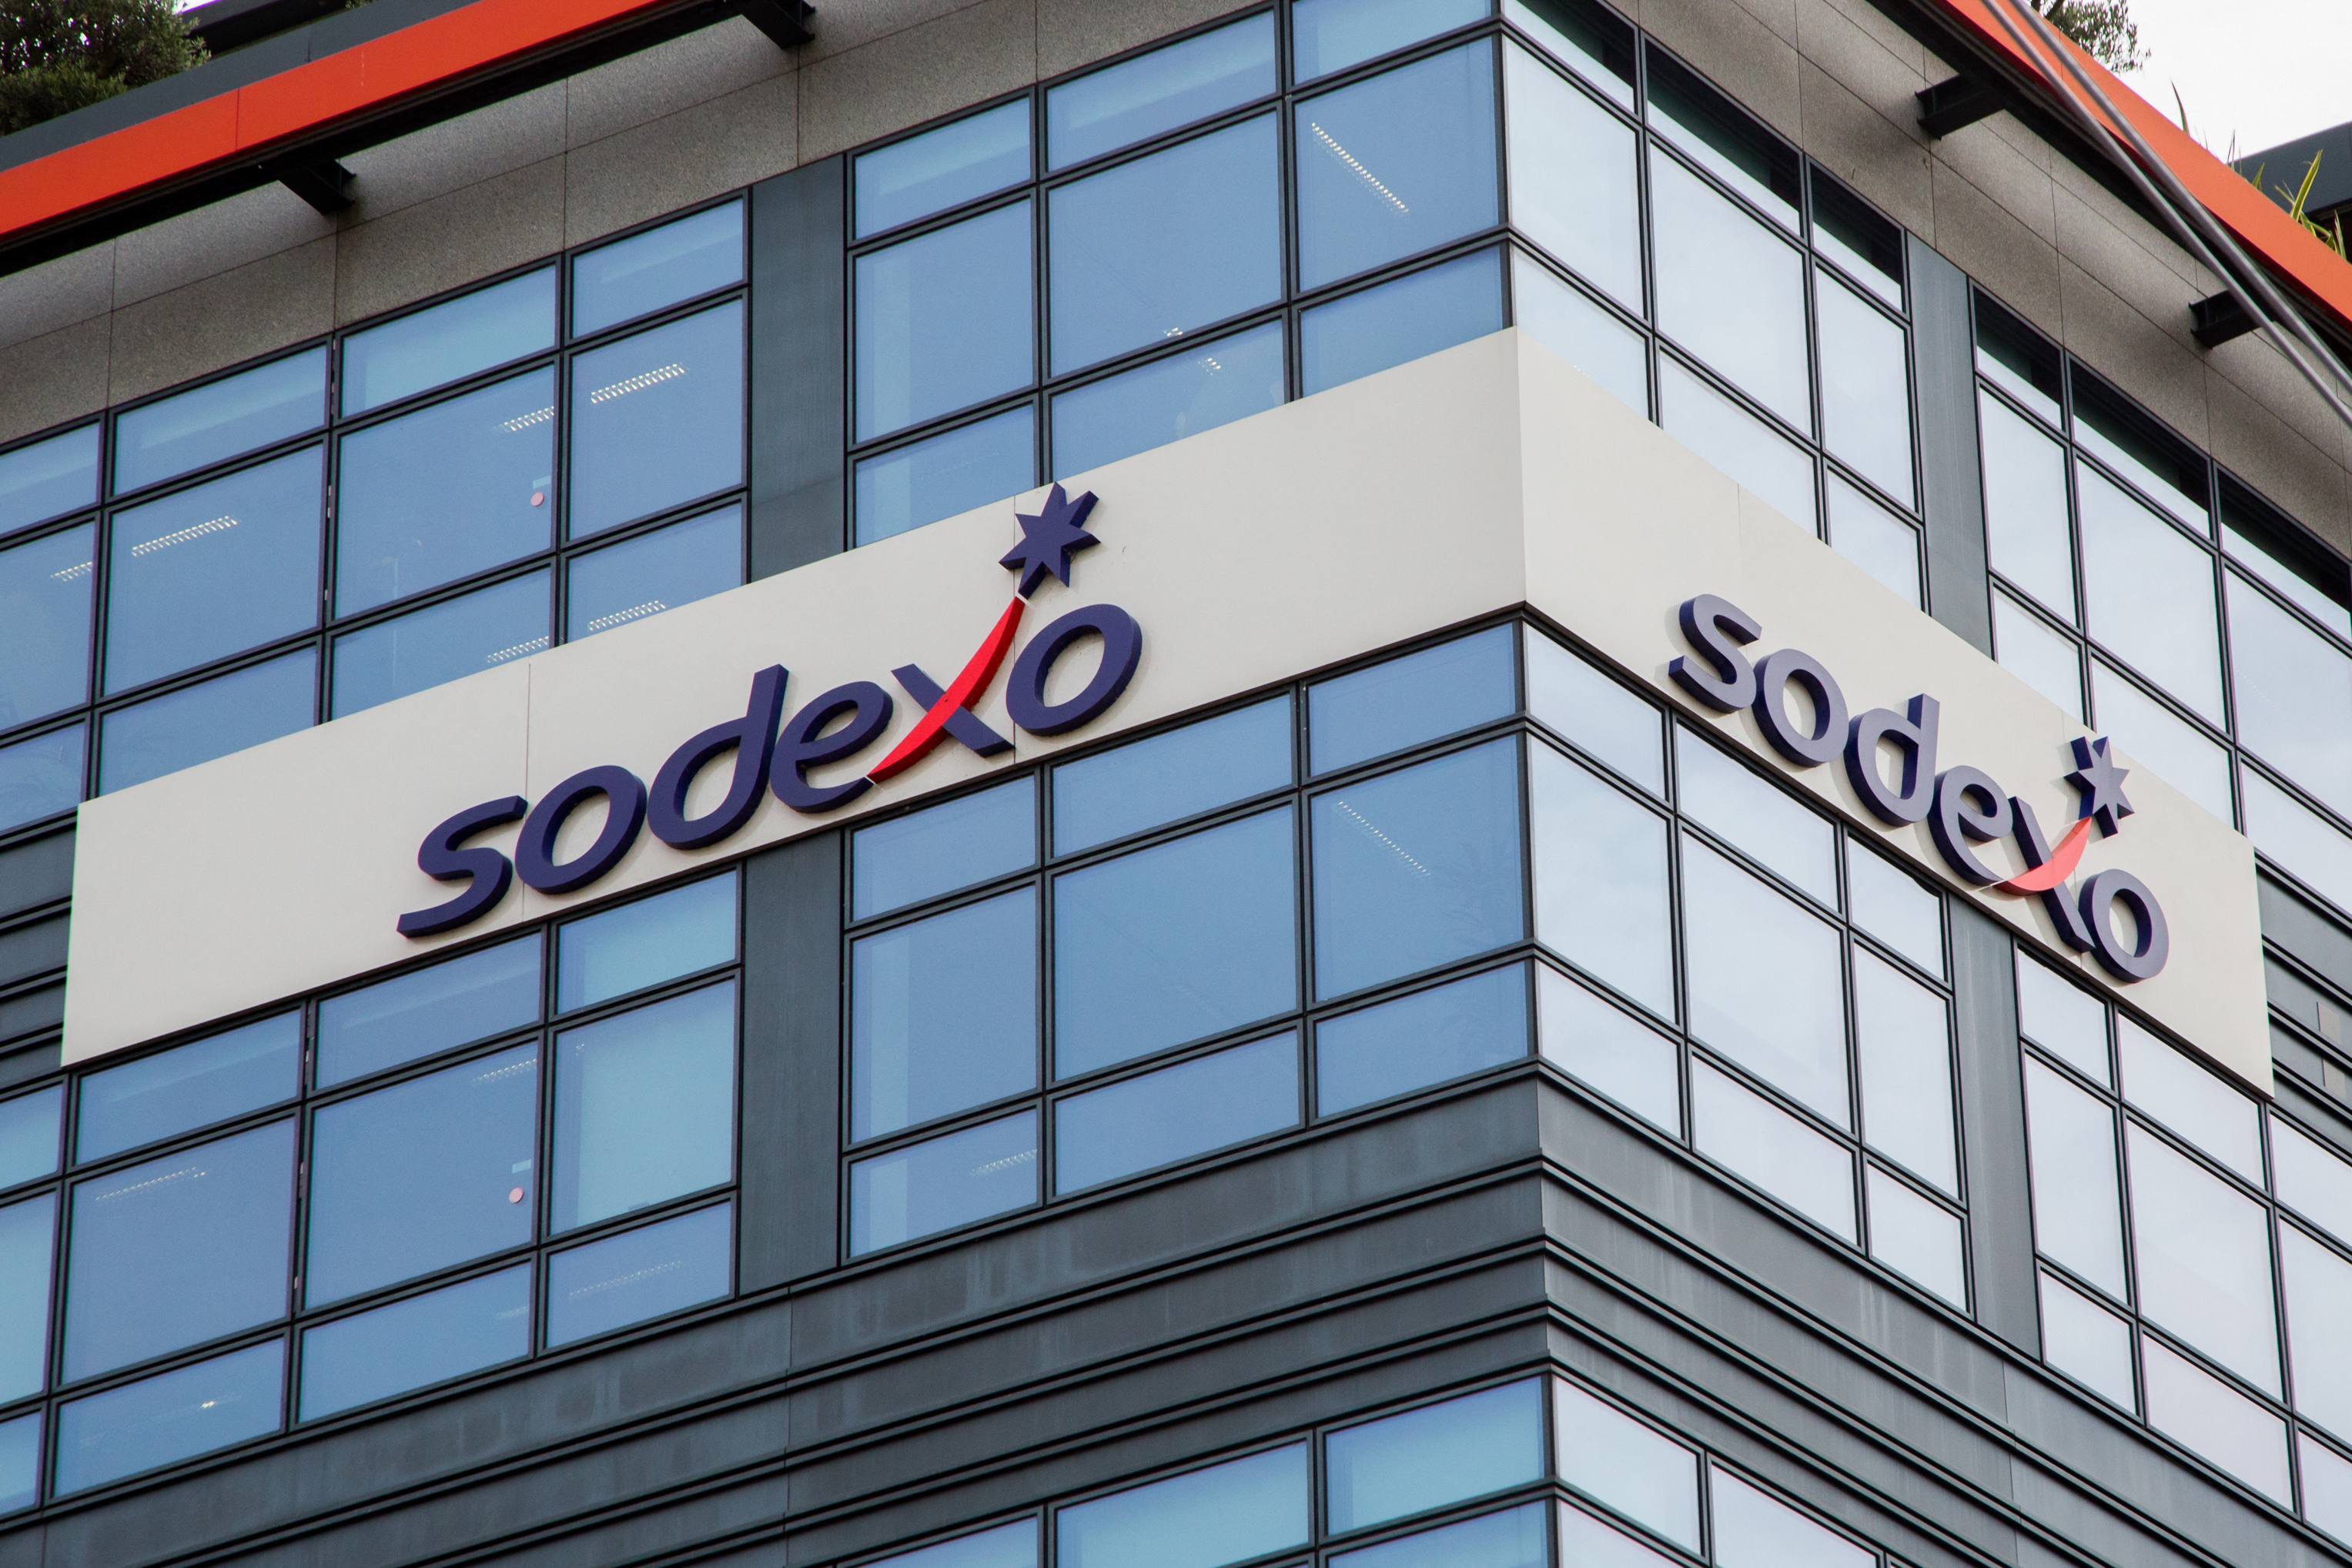 Comment Sodexo consolide sa croissance, en pleine hausse des prix alimentaires